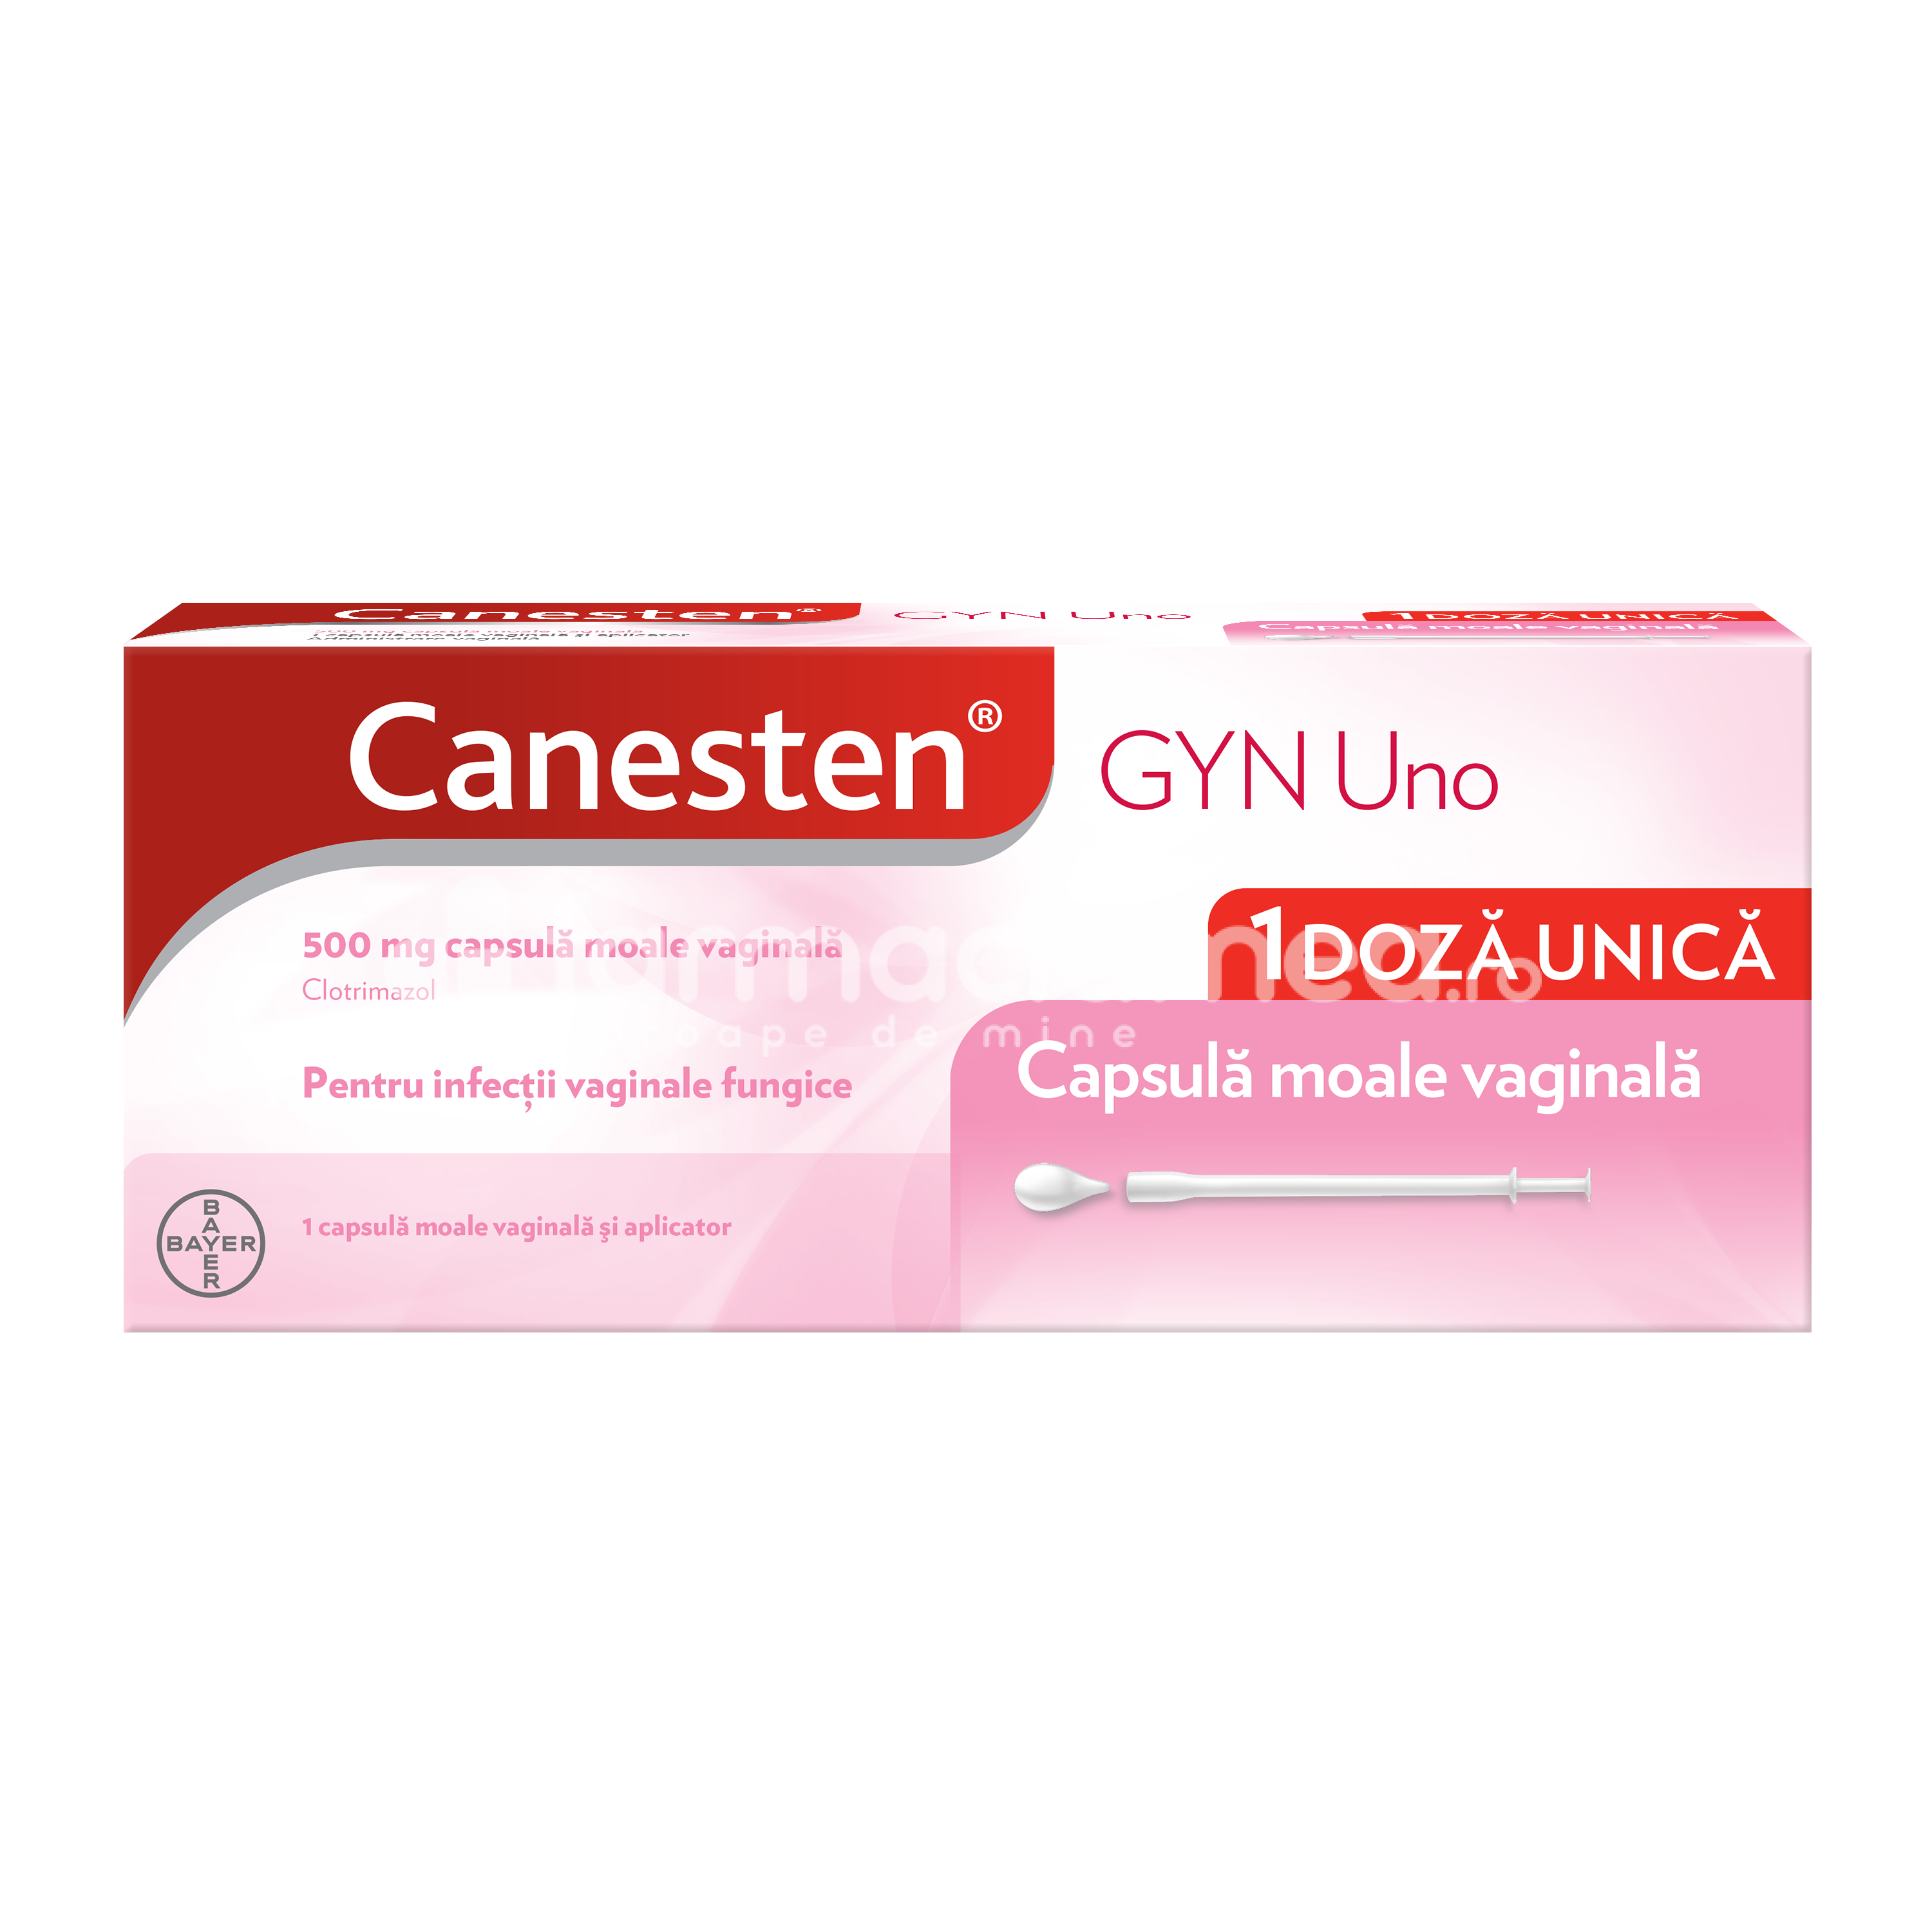 Afecţiuni genito-urinare OTC - Canesten Gyn Uno 500 mg, contine clotrimazol, indicat in tratamentul infectiilor vaginale, candidoza vaginala, doza unica, 1 comprimat vaginal, Bayer, farmaciamea.ro